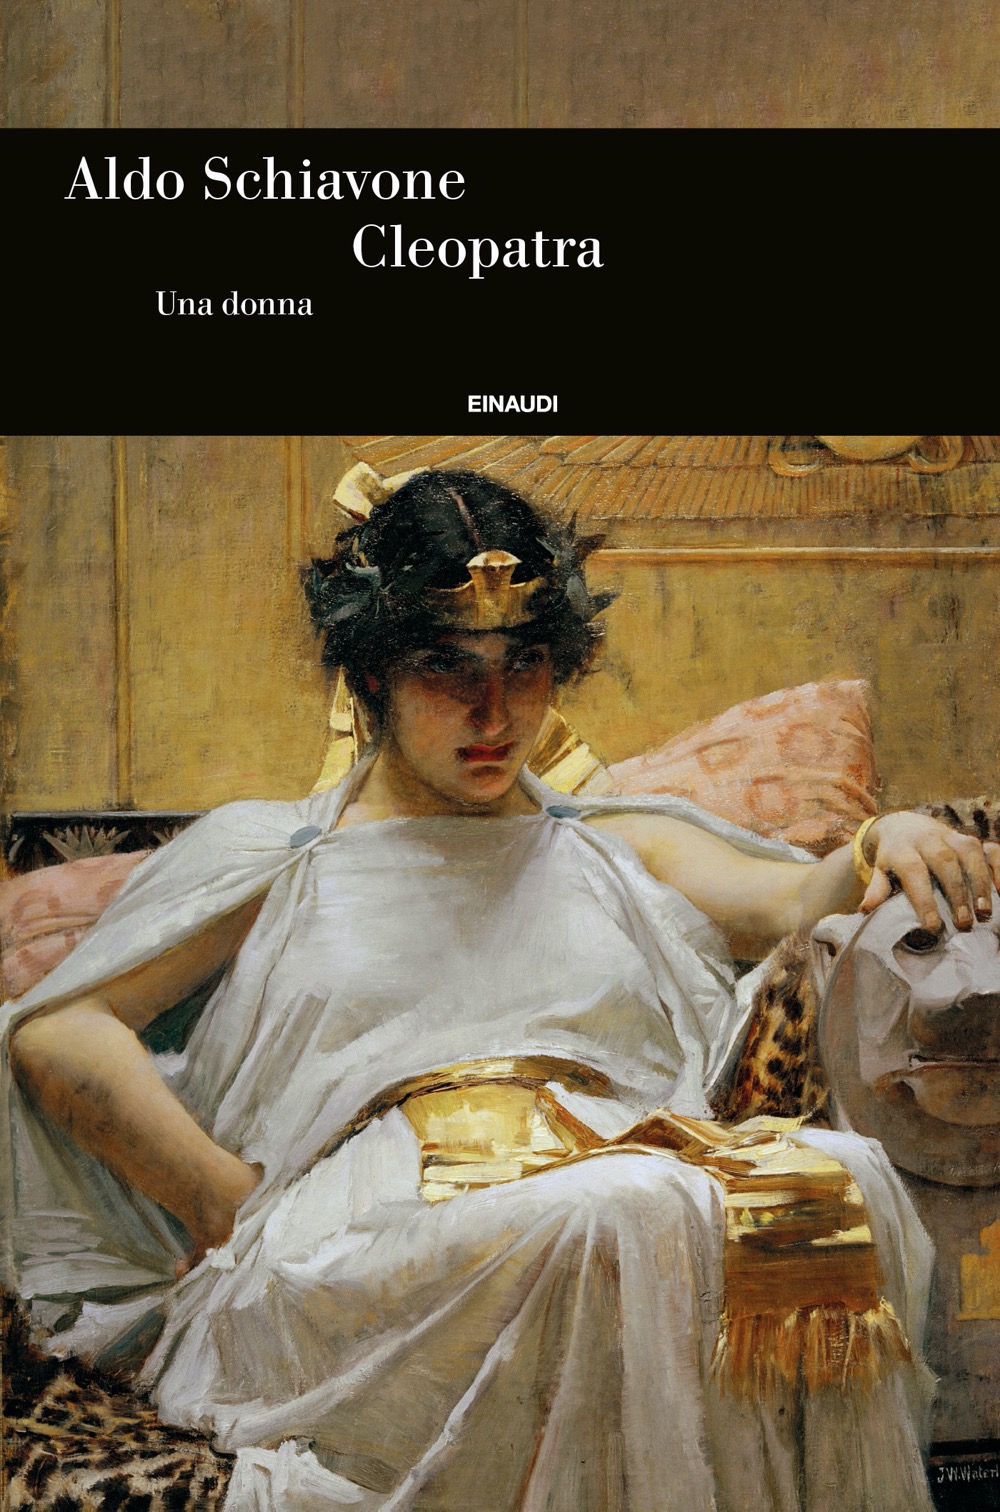 Aldo Schiavone: Cleopatra